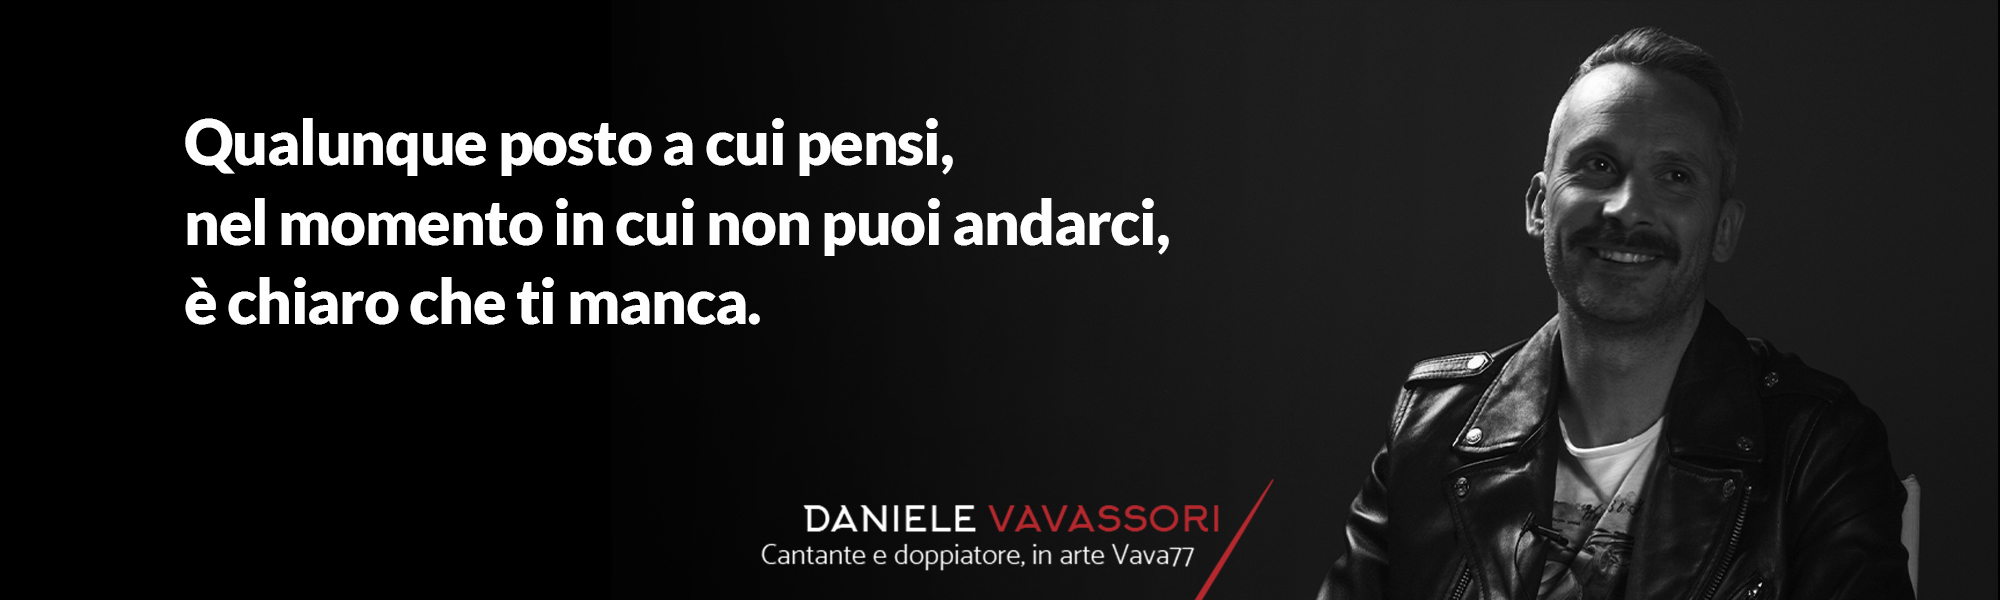 Daniele Vavassori